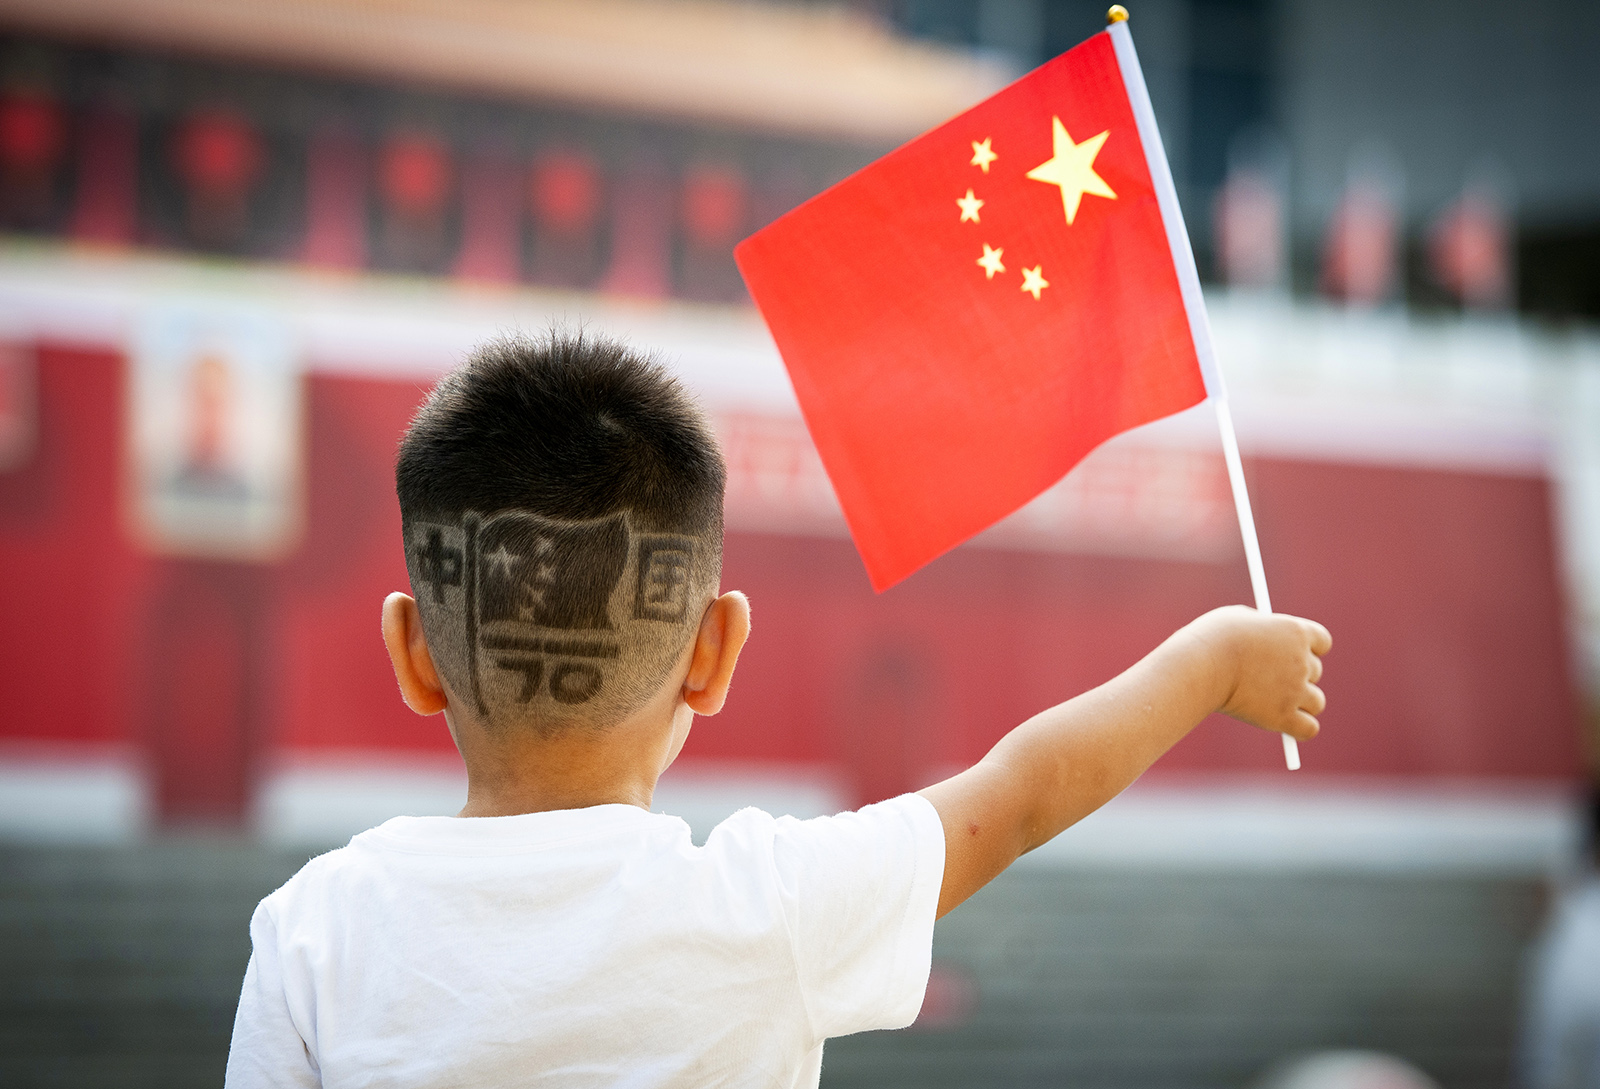 李若琪(高中組)山東《萌娃的“頭等大事”》 2019國慶節，四歲的弟弟用他自己獨特的方式，慶祝新中國成立70周年。搜索復制